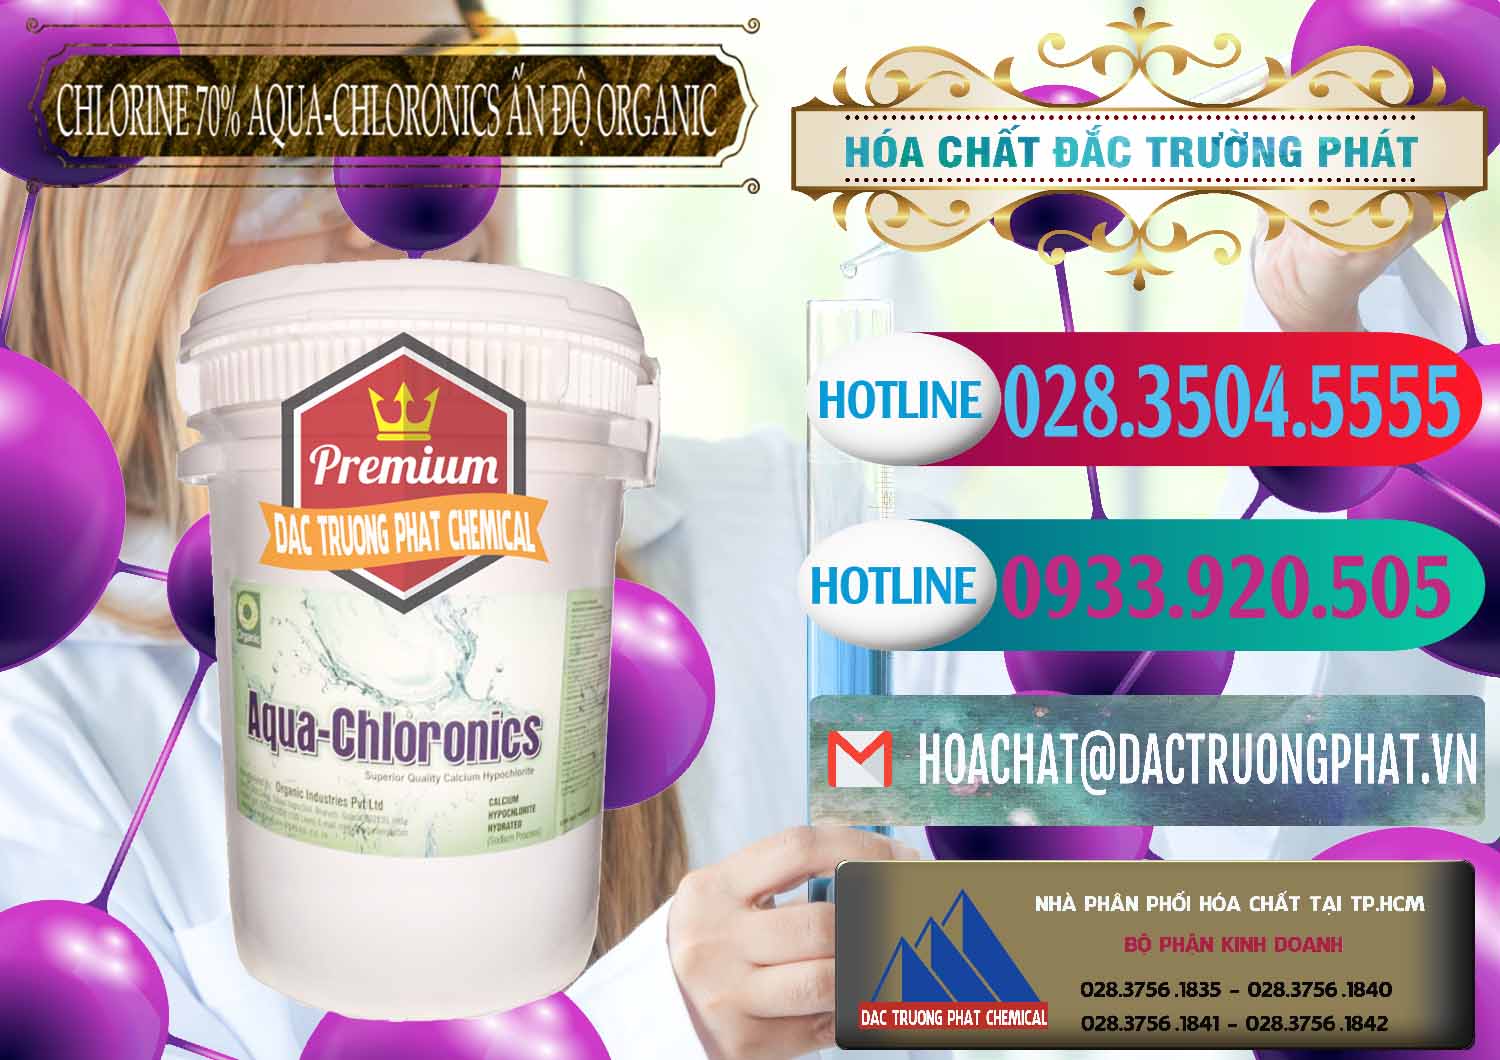 Cty chuyên kinh doanh _ bán Chlorine – Clorin 70% Aqua-Chloronics Ấn Độ Organic India - 0211 - Công ty cung cấp ( phân phối ) hóa chất tại TP.HCM - truongphat.vn